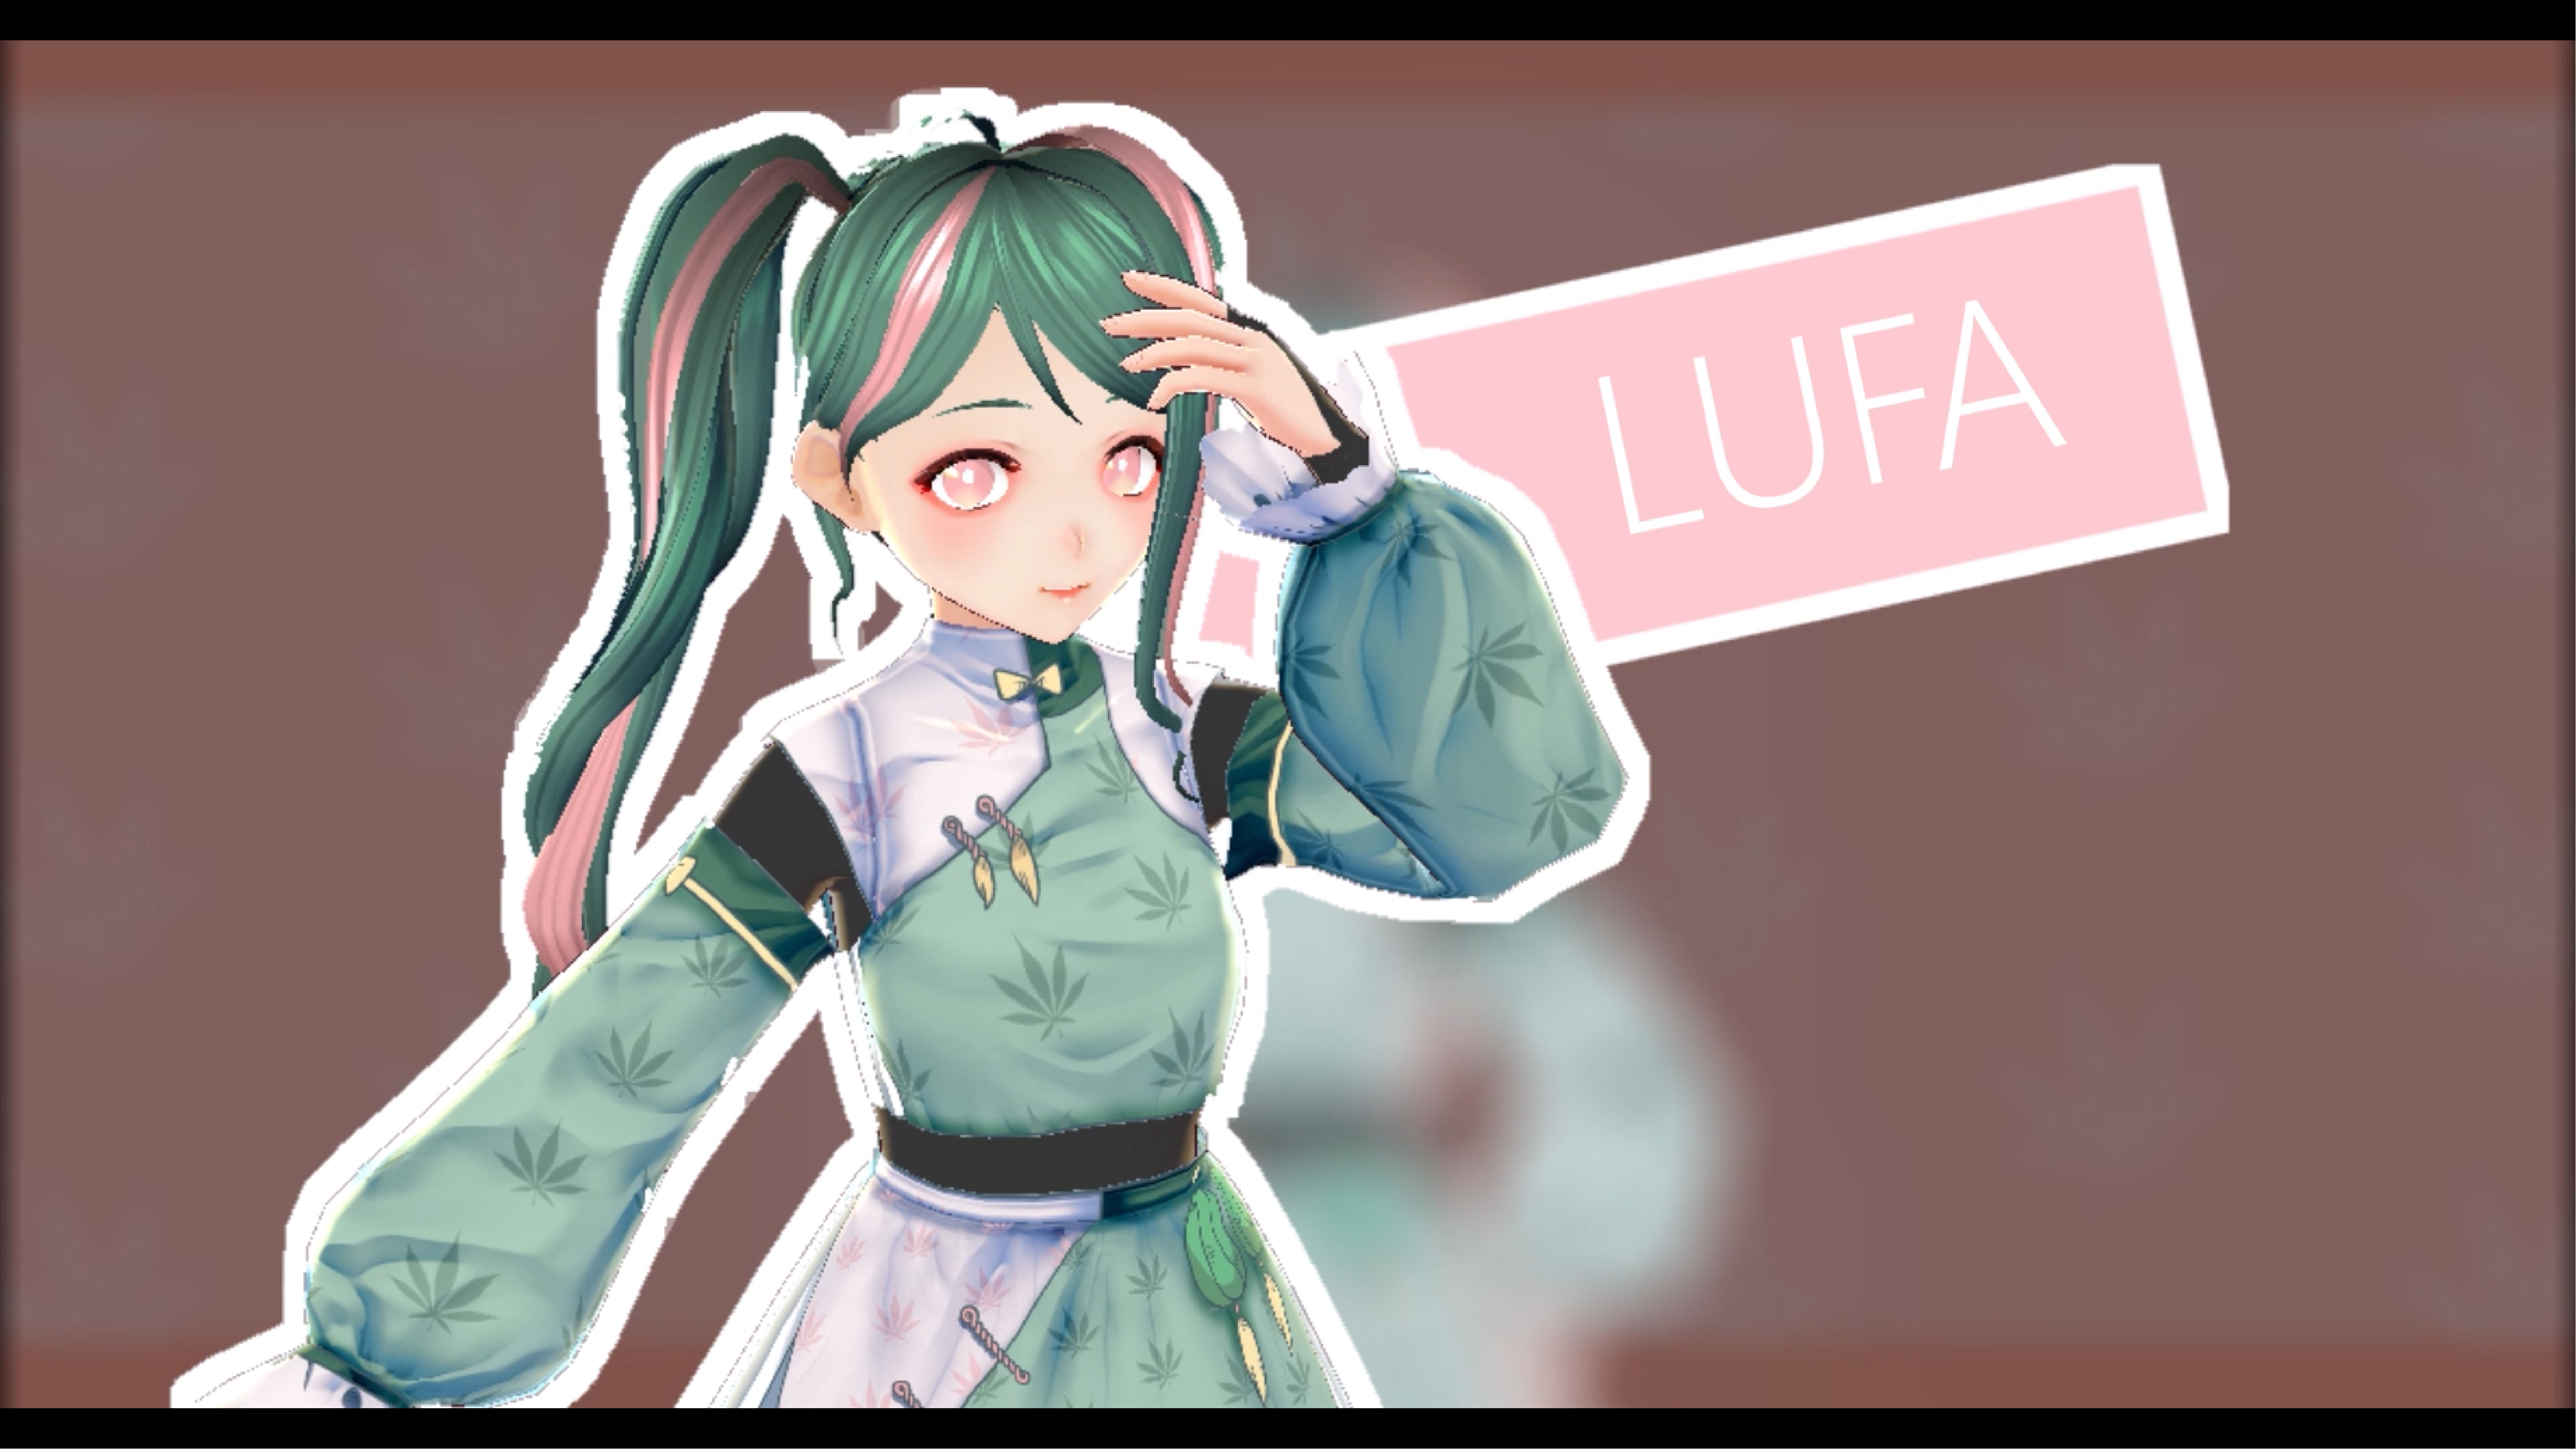 數媒系同學創作的虛擬虛擬角色「Lufa」。